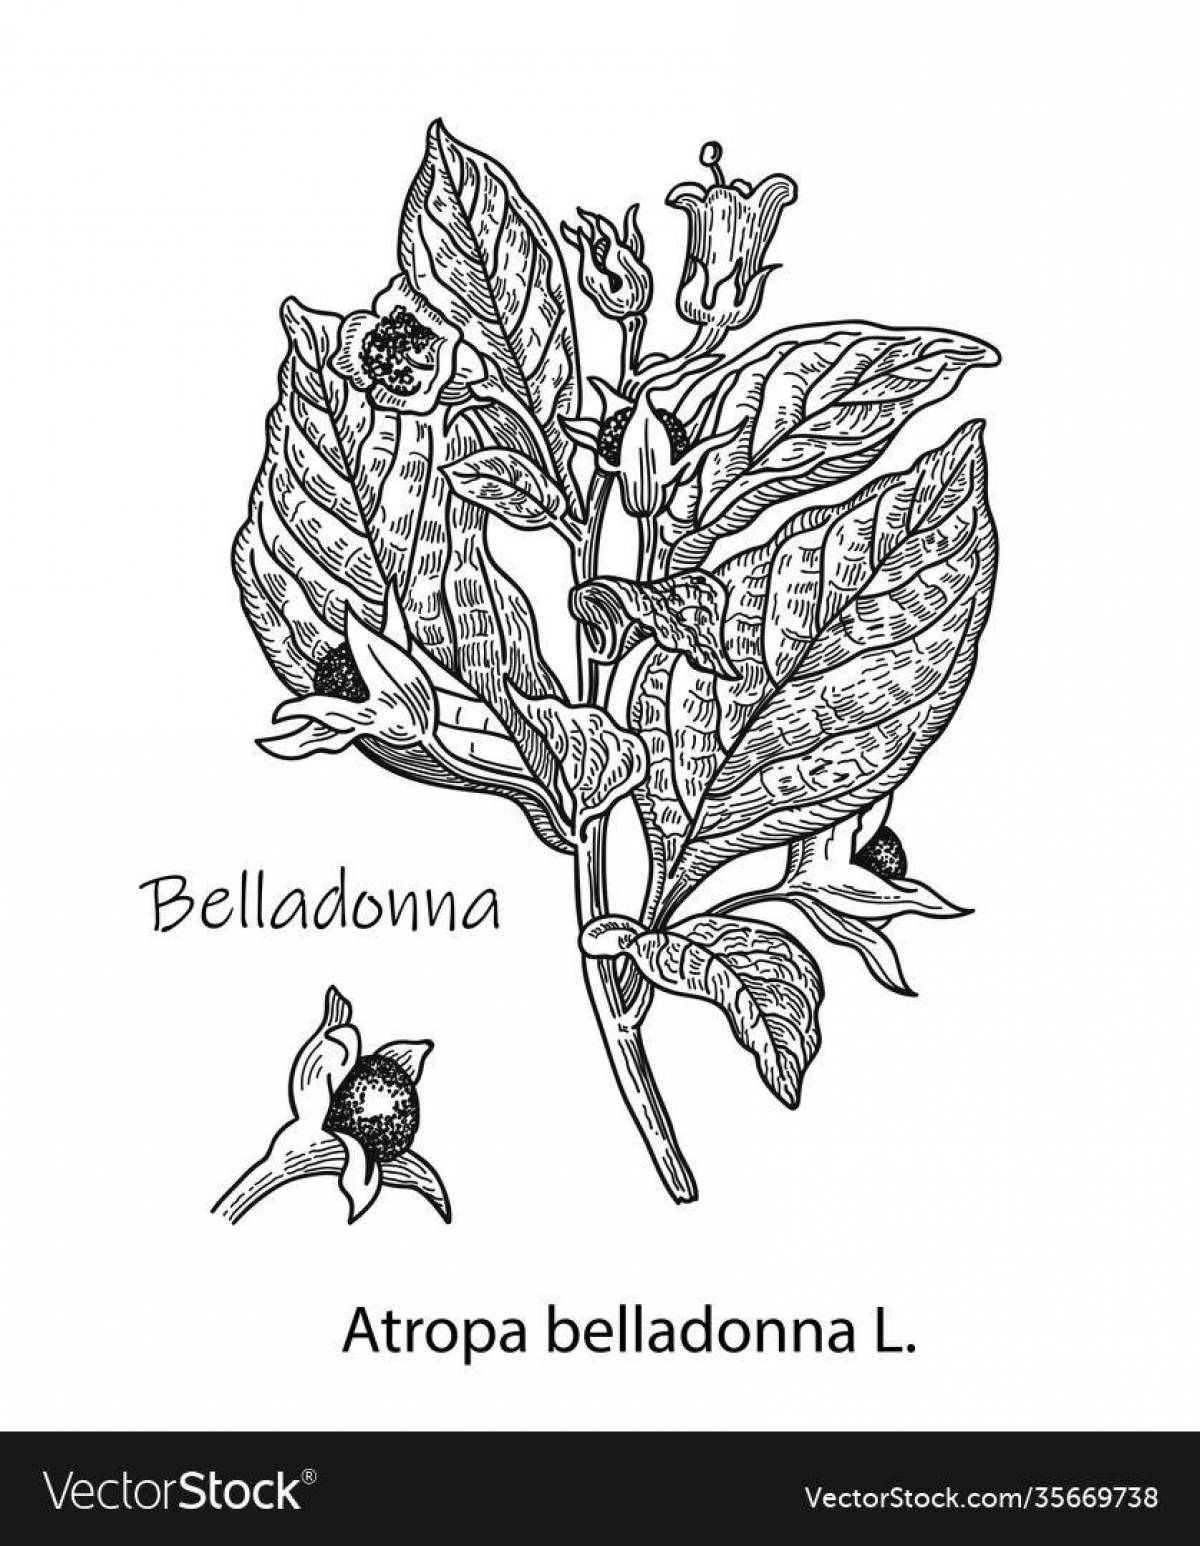 Belladonna amazing coloring book